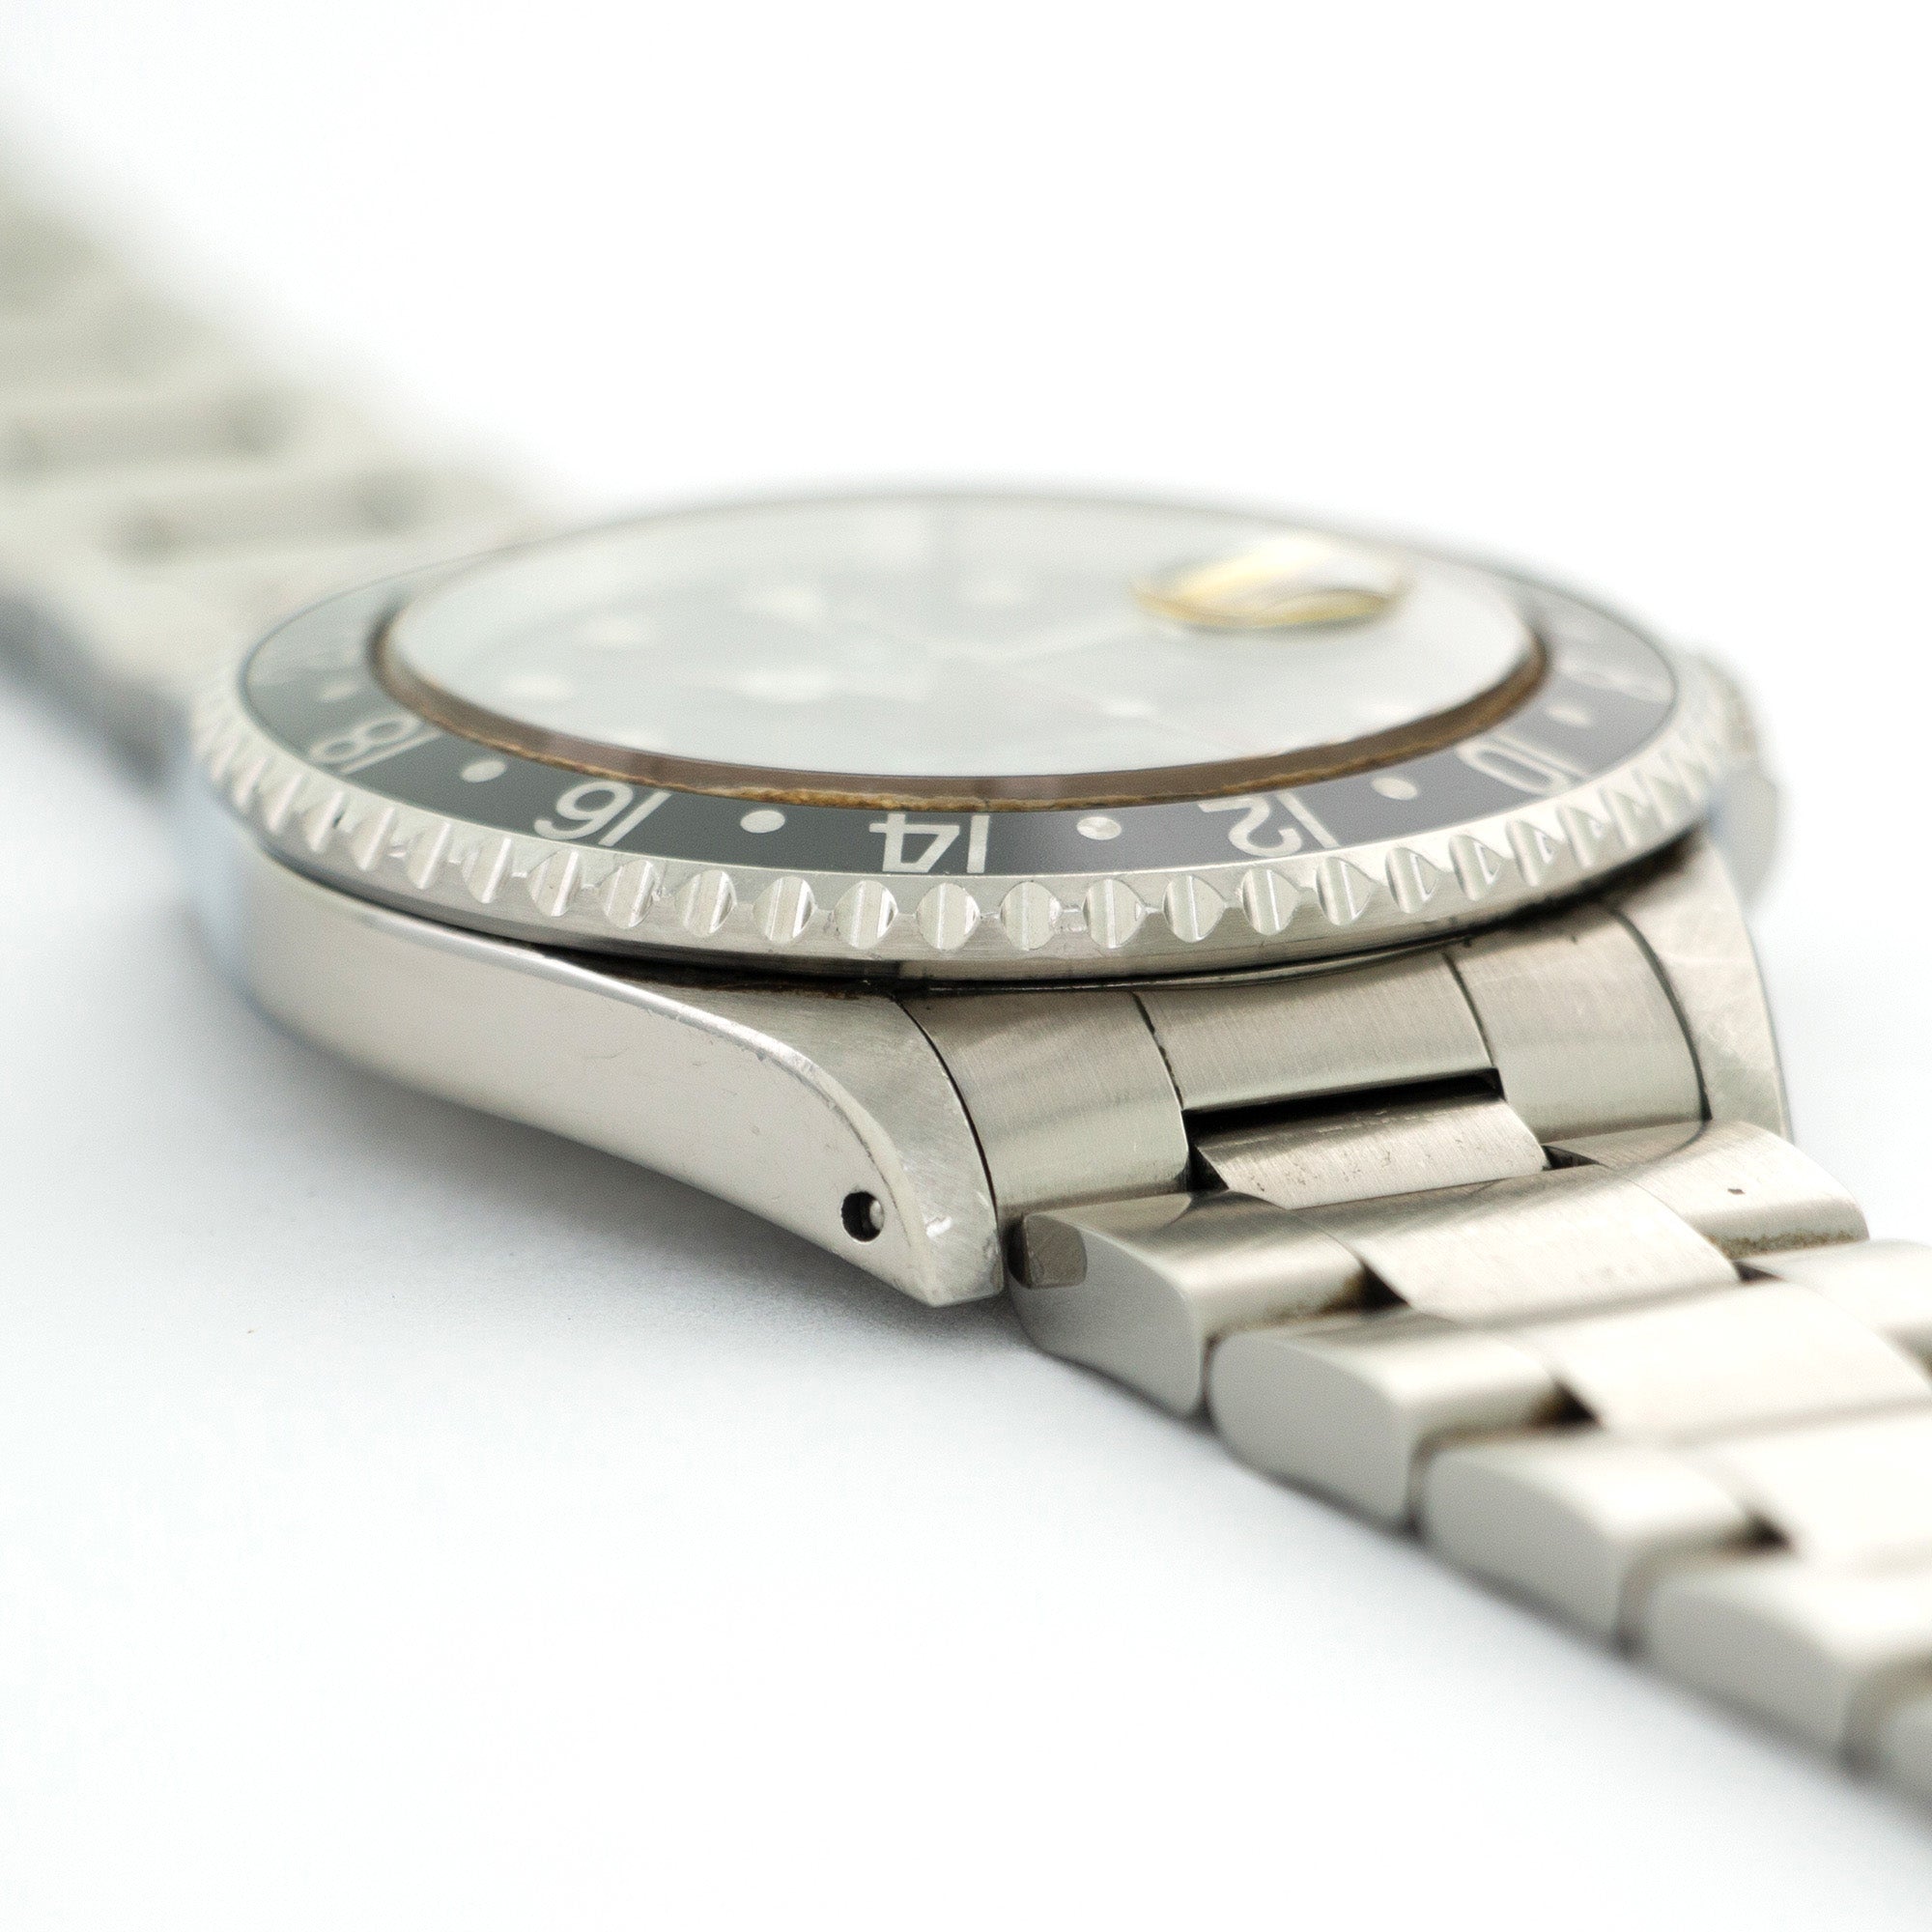 Rolex - Rolex GMT-Master Watch Ref. 16700 - The Keystone Watches